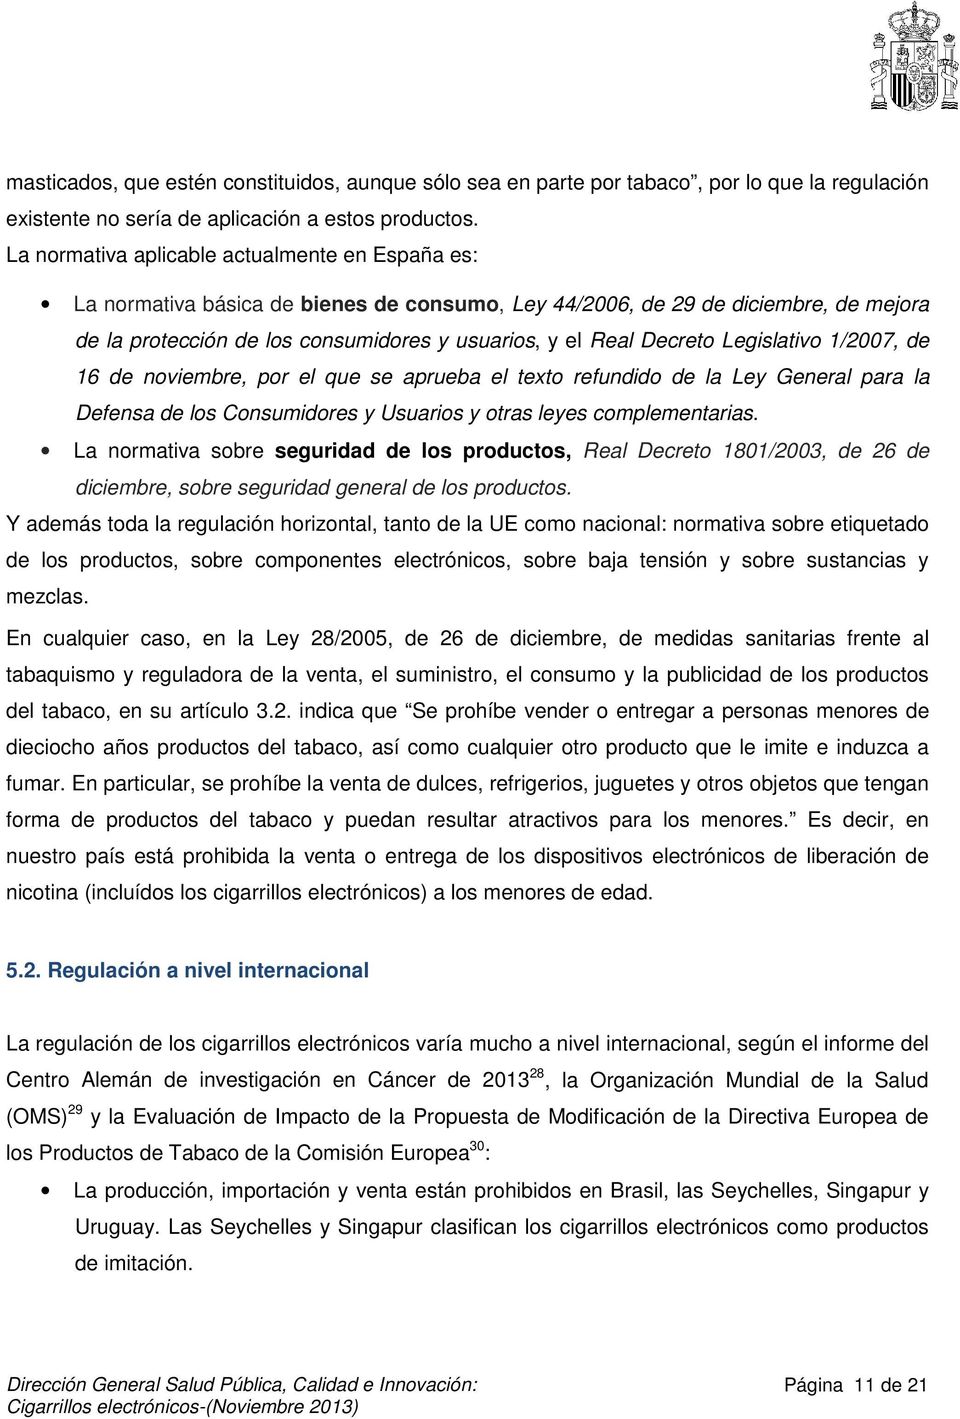 Decreto Legislativo 1/2007, de 16 de noviembre, por el que se aprueba el texto refundido de la Ley General para la Defensa de los Consumidores y Usuarios y otras leyes complementarias.